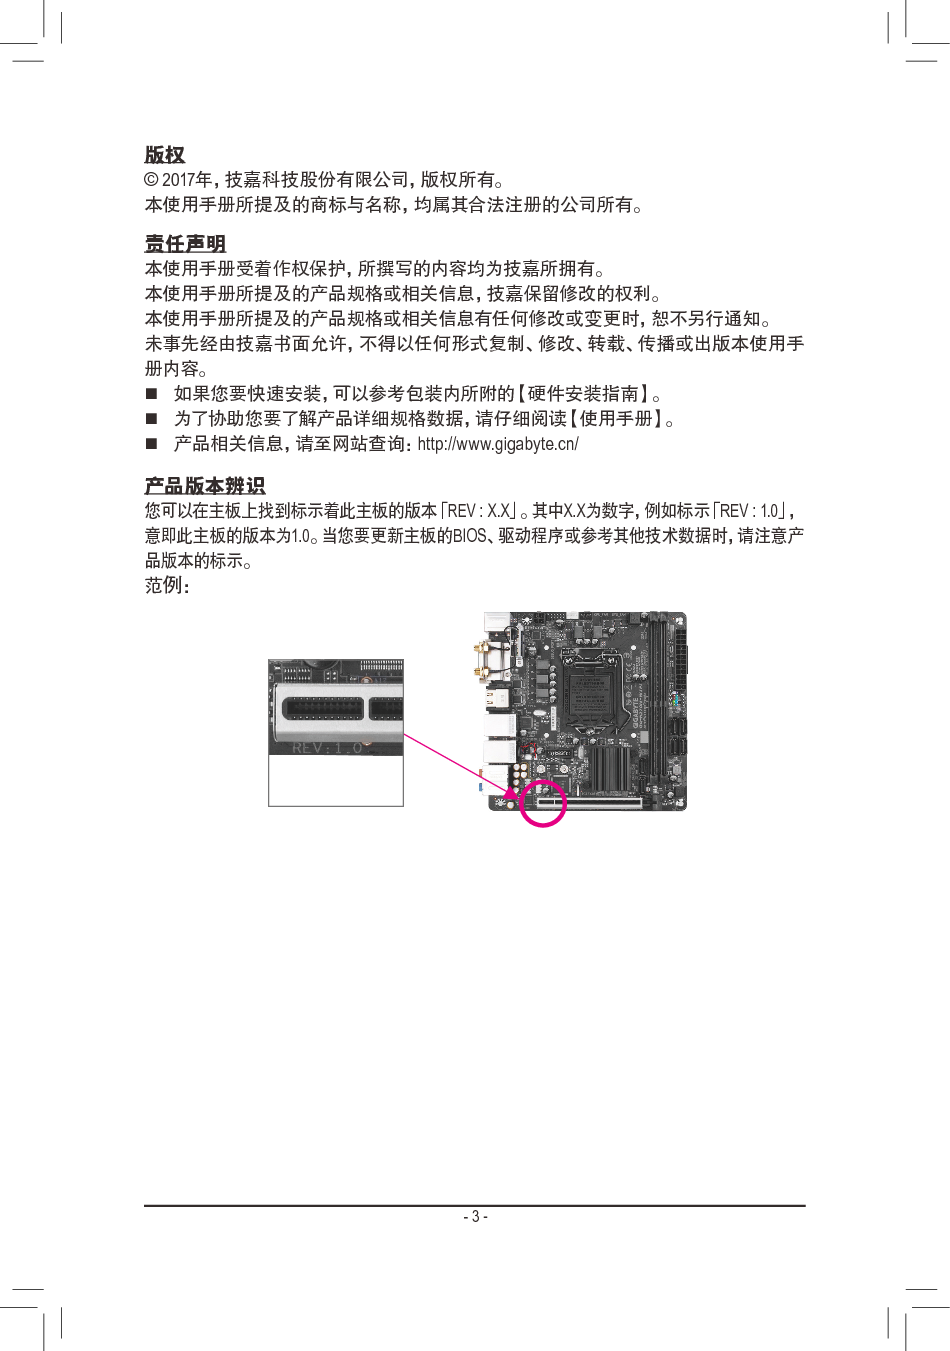 技嘉 Gigabyte GA-H270N-WIFI 1002版 使用手册 第2页